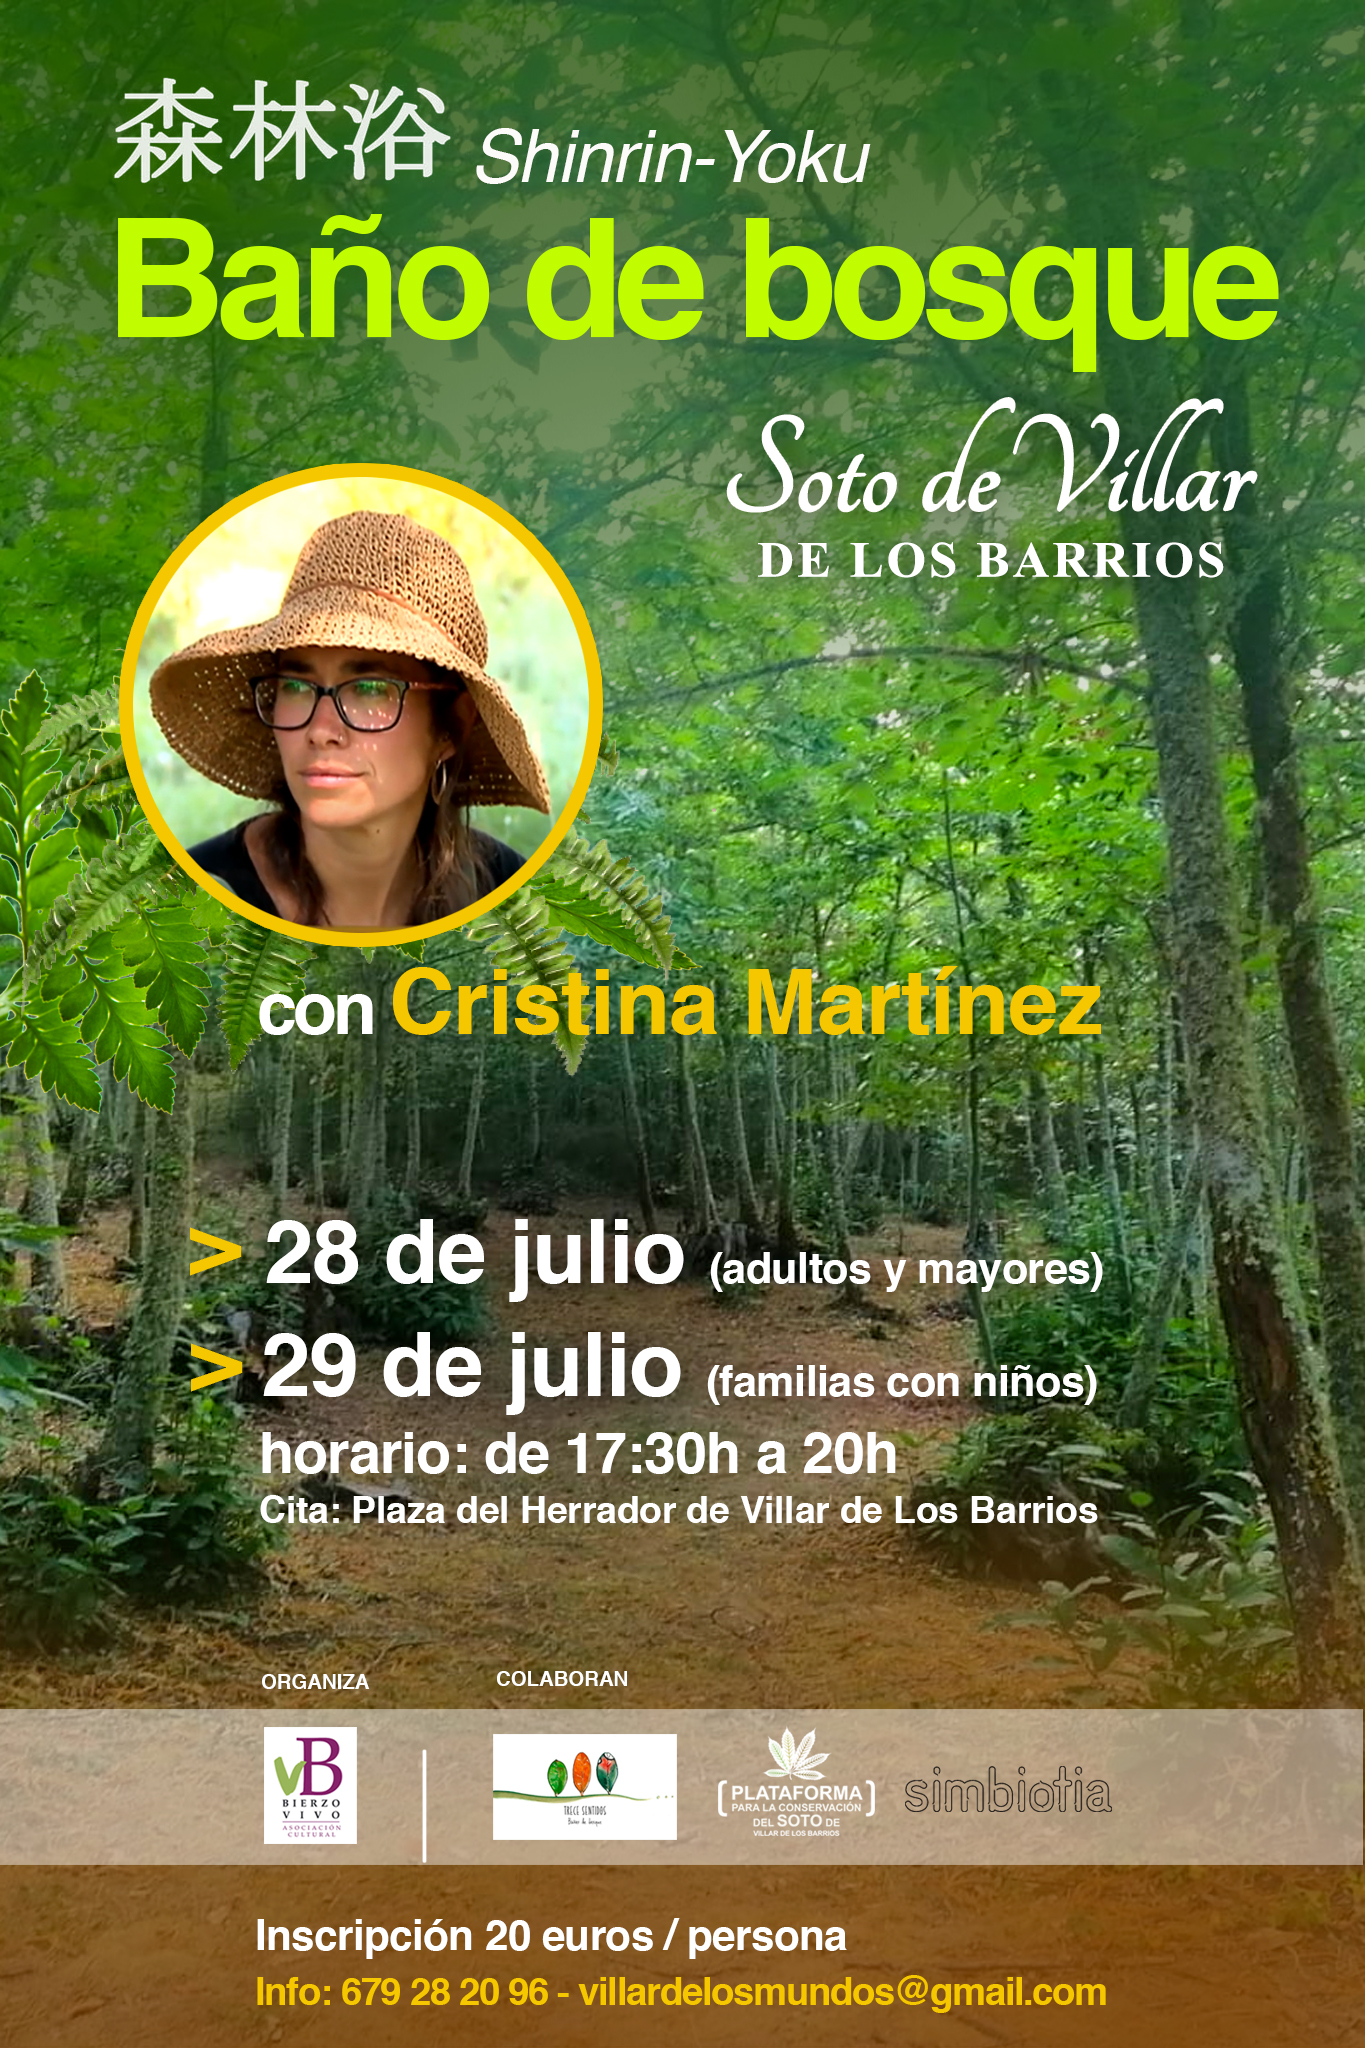 Este verano, primer "Baño de bosque" en el Soto de Villar de Los Barrios 2